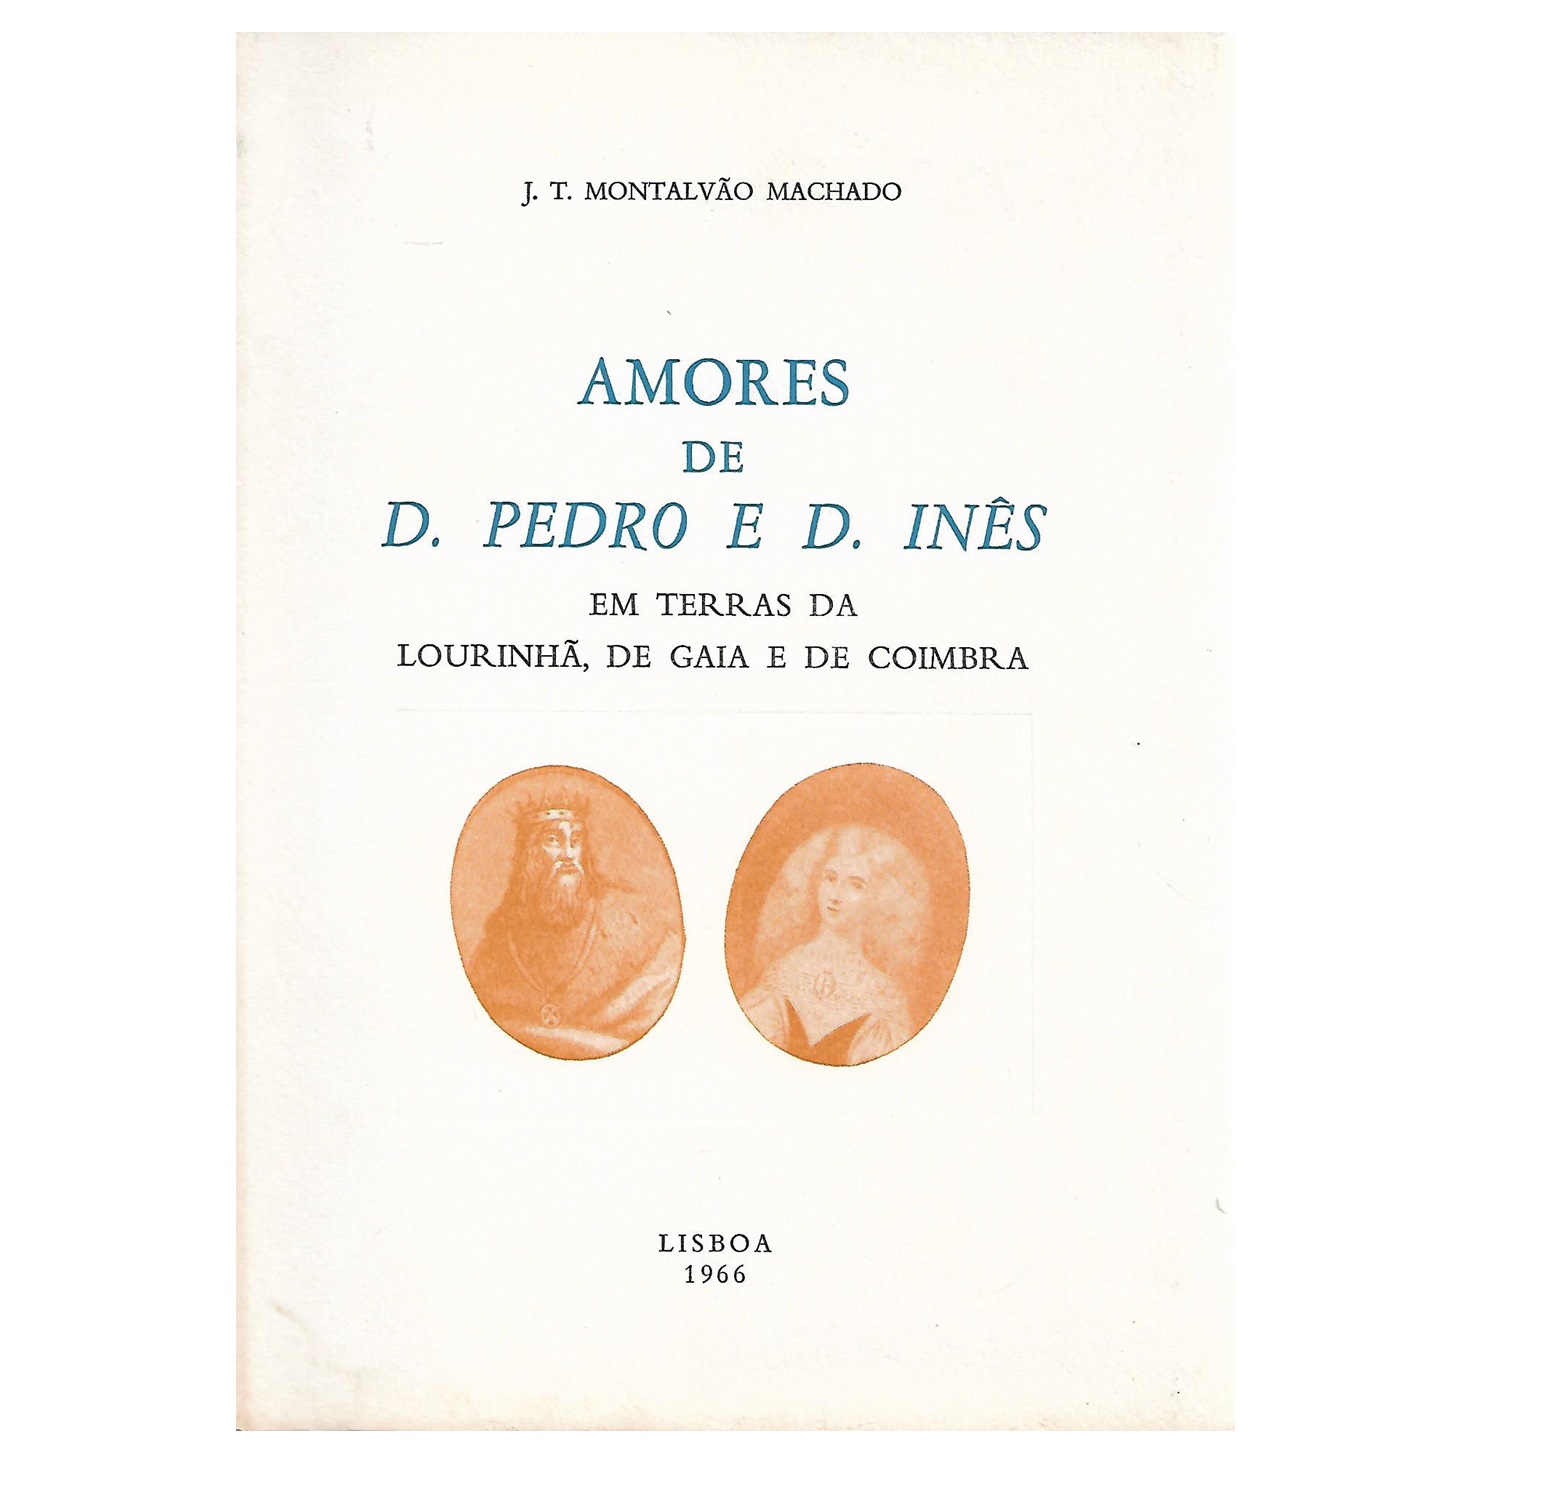 AMORES DE D. PEDRO E D. INÊS